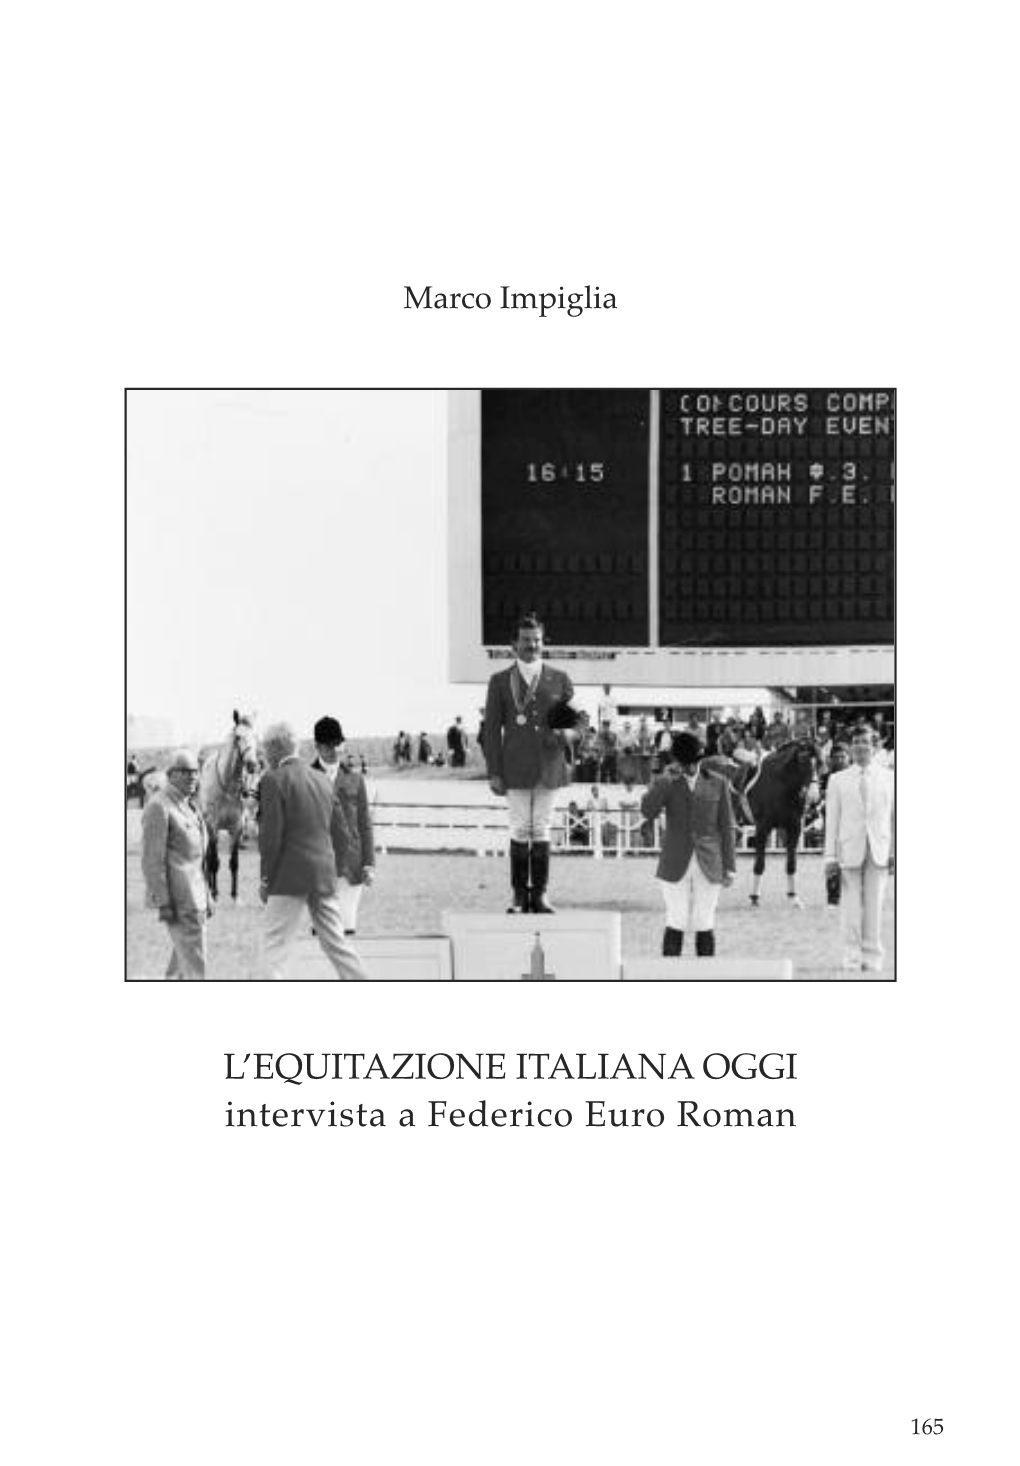 L'equitazione ITALIANA OGGI Intervista a Federico Euro Roman